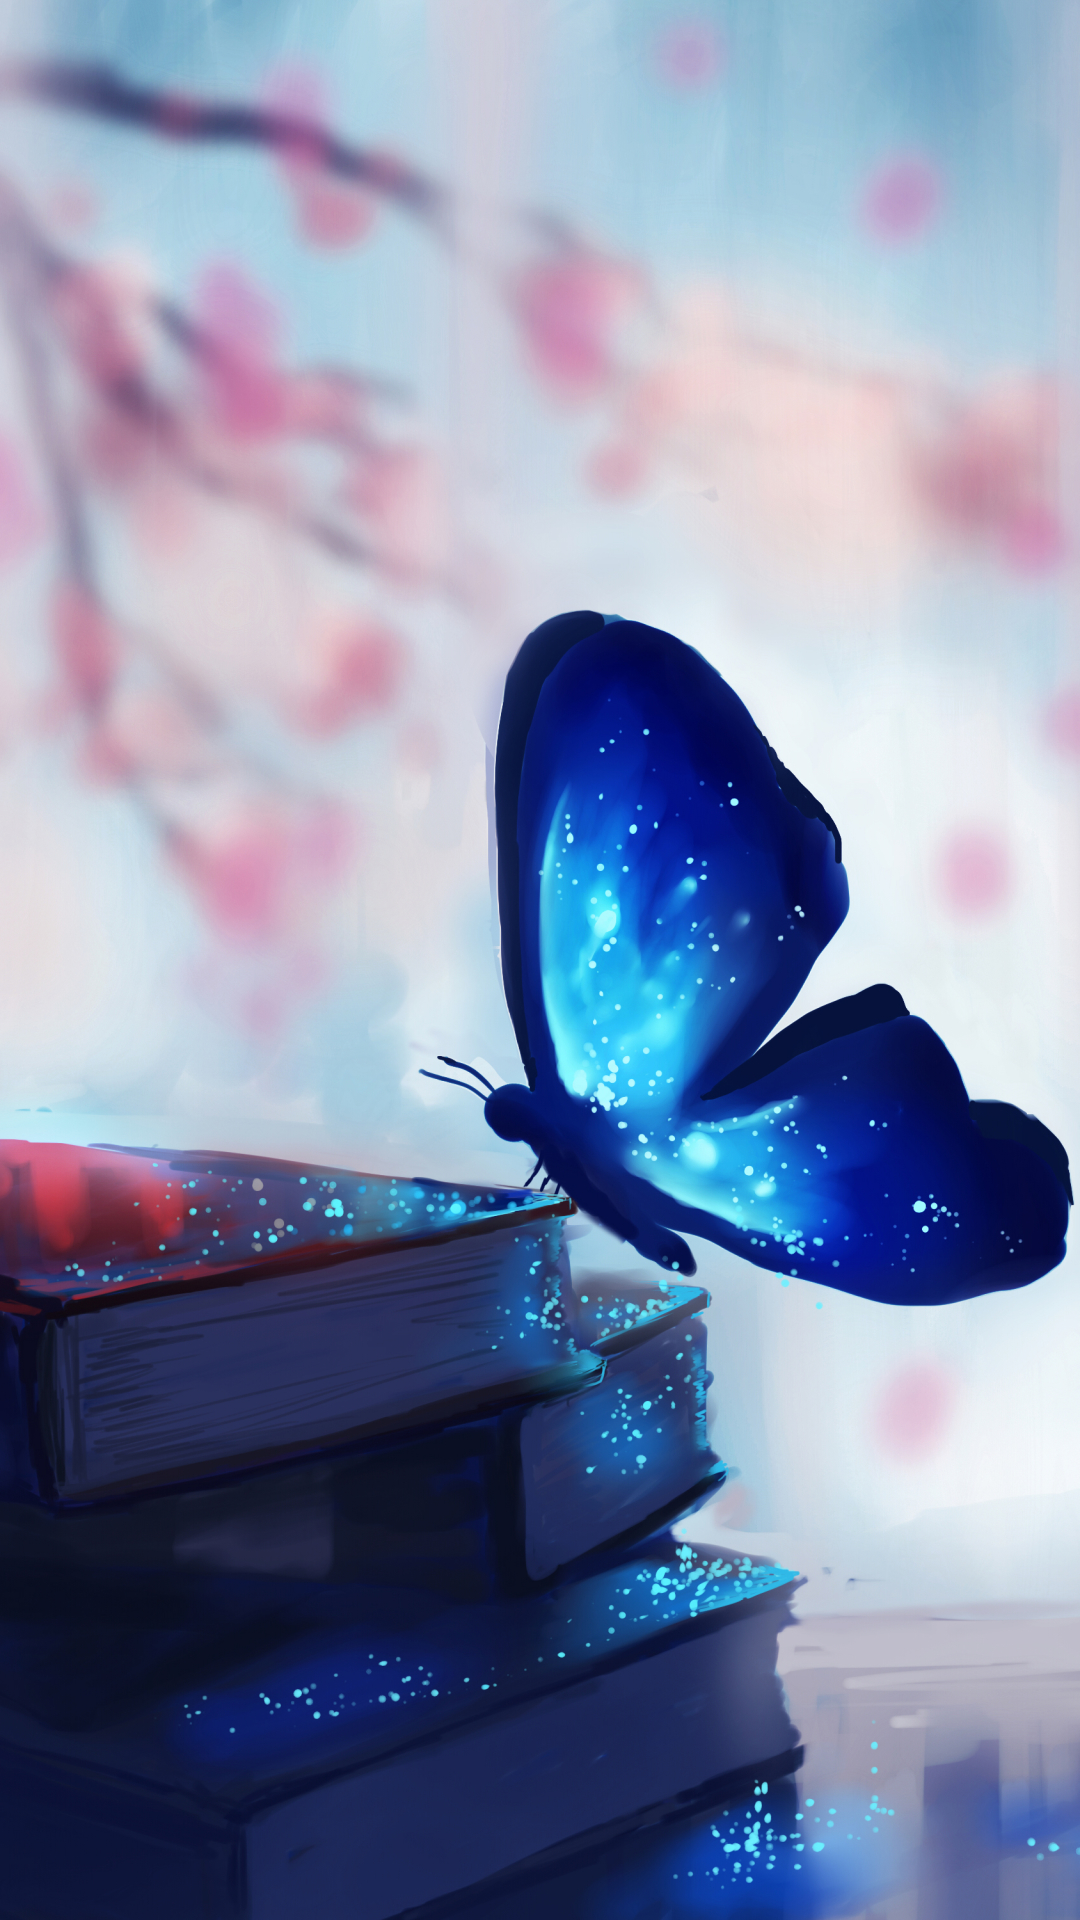 Night butterfly by Chibionpu